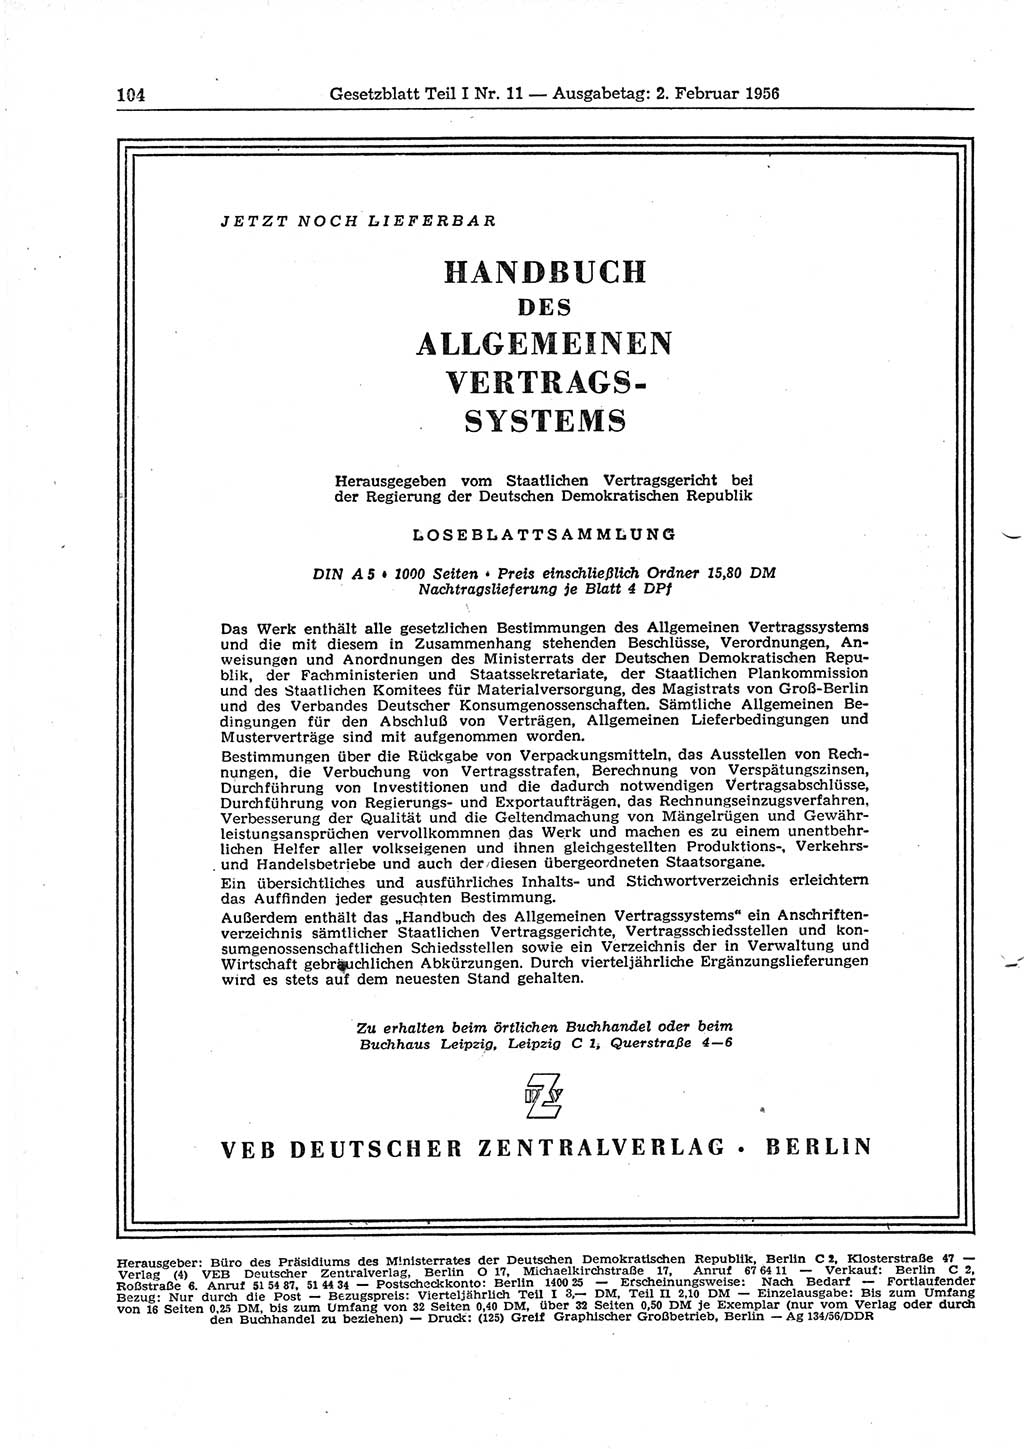 Gesetzblatt (GBl.) der Deutschen Demokratischen Republik (DDR) Teil Ⅰ 1956, Seite 104 (GBl. DDR Ⅰ 1956, S. 104)